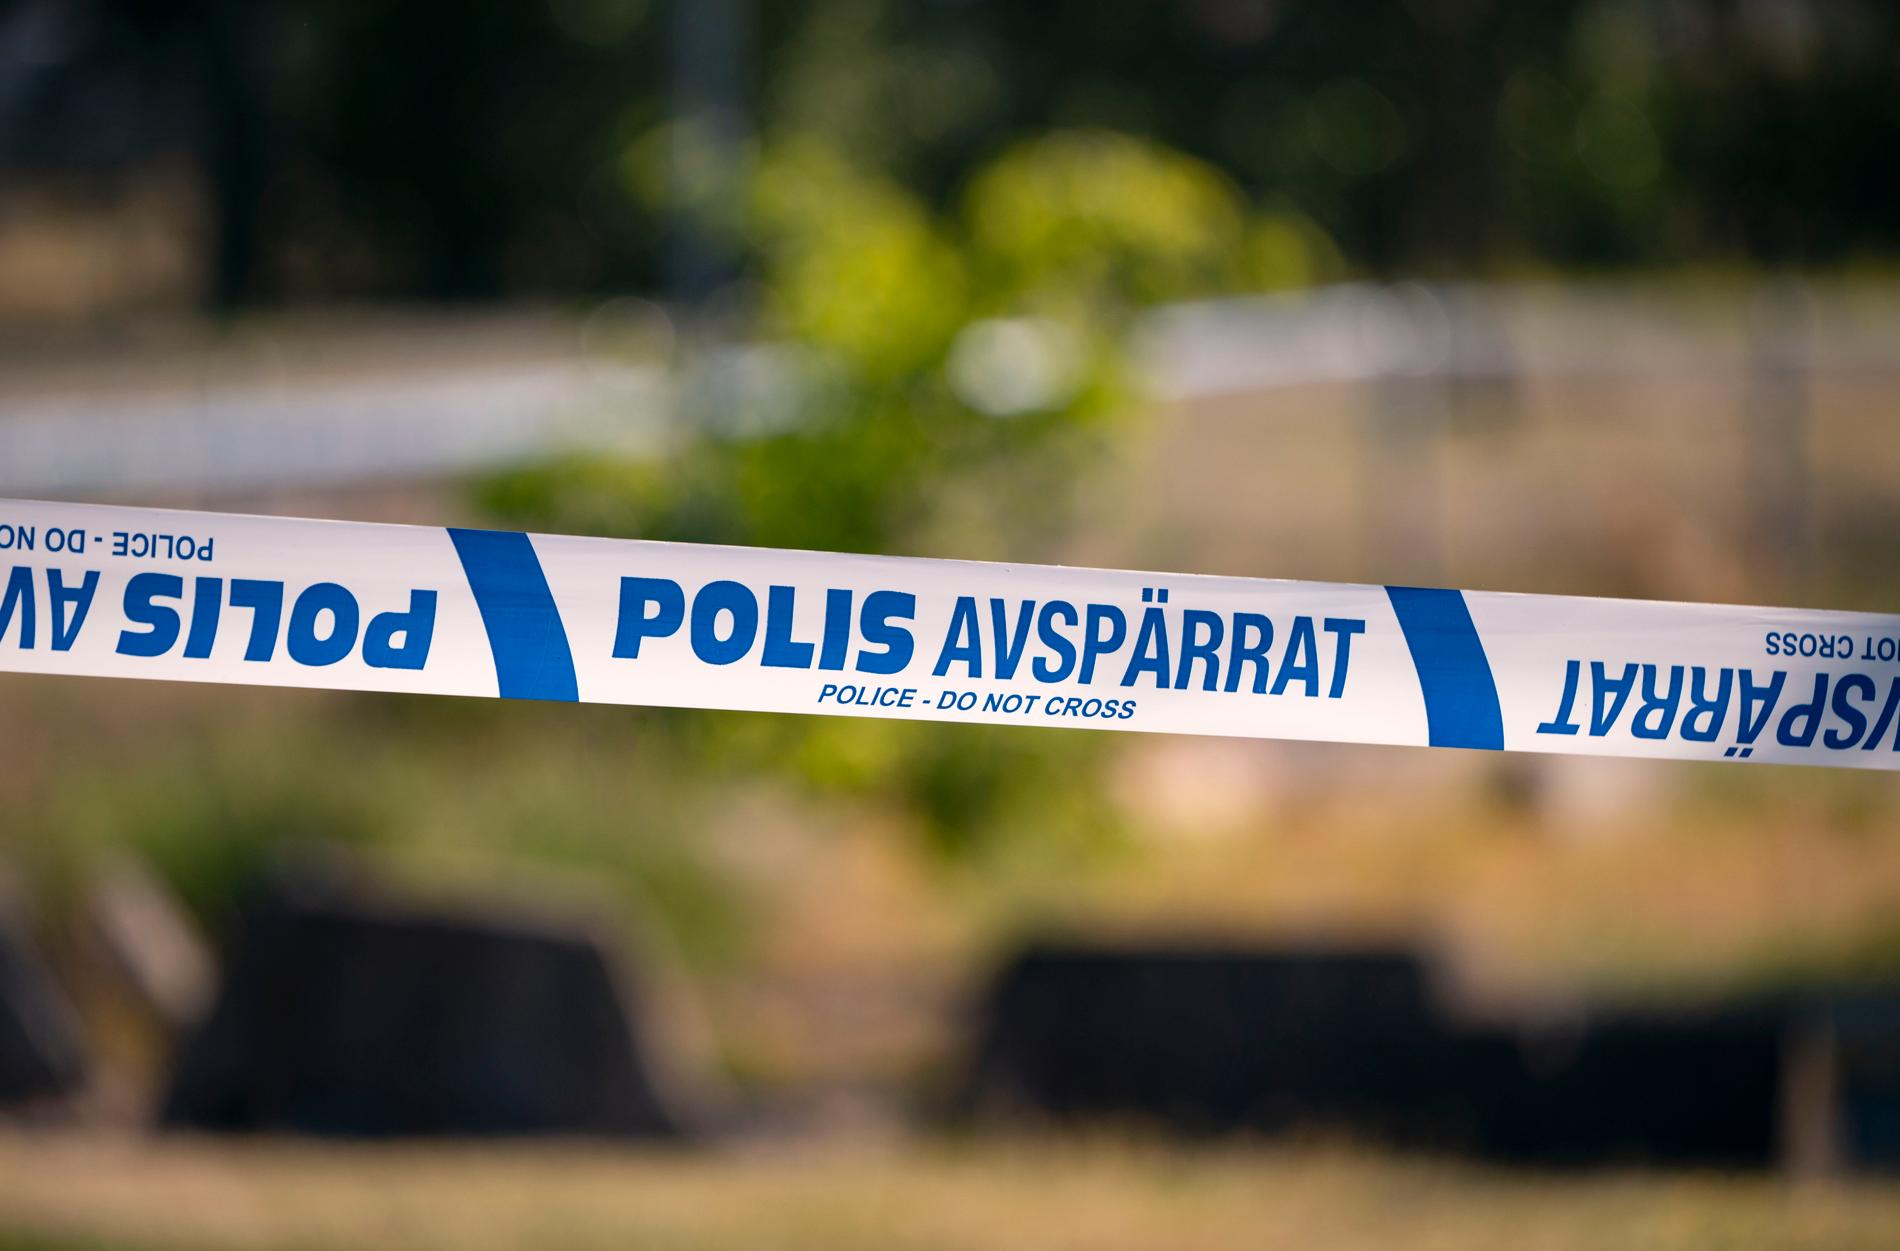 En lägenhet i Södertälje är avspärrad efter misstanke om mordbrand. En person är anhållen. Arkivbild.